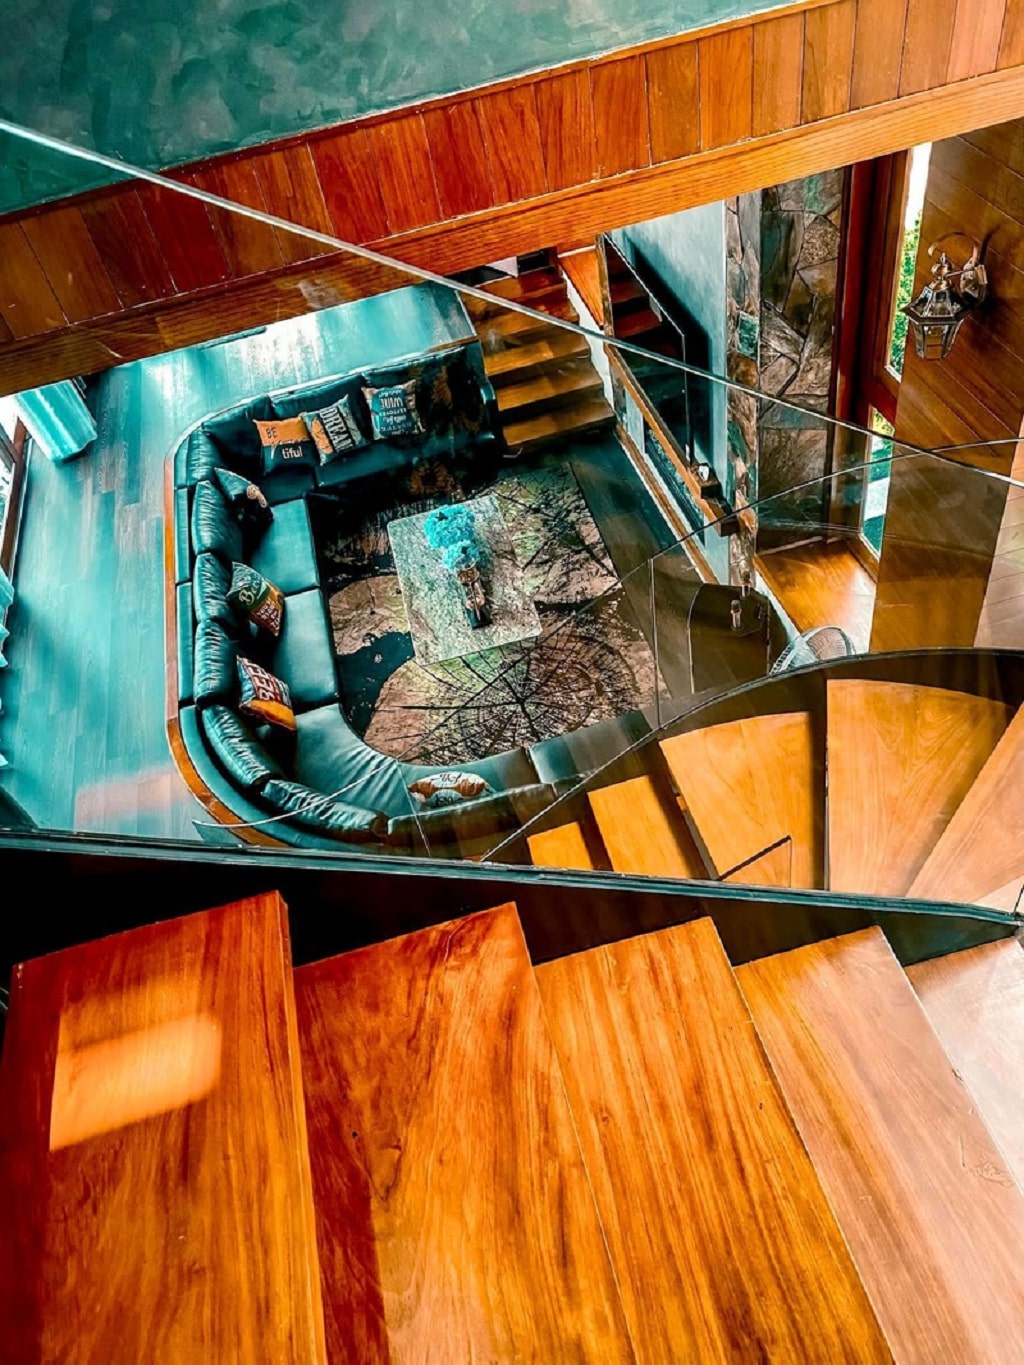 Cách thiết kế phòng khách ấn tượng với mẫu nội thất cao cấp hình chữ U mang màu sắc độc đáo đầy táo bạo, được làm từ nỉ và chiếc cầu thang xoắn vô cùng độc đáo.